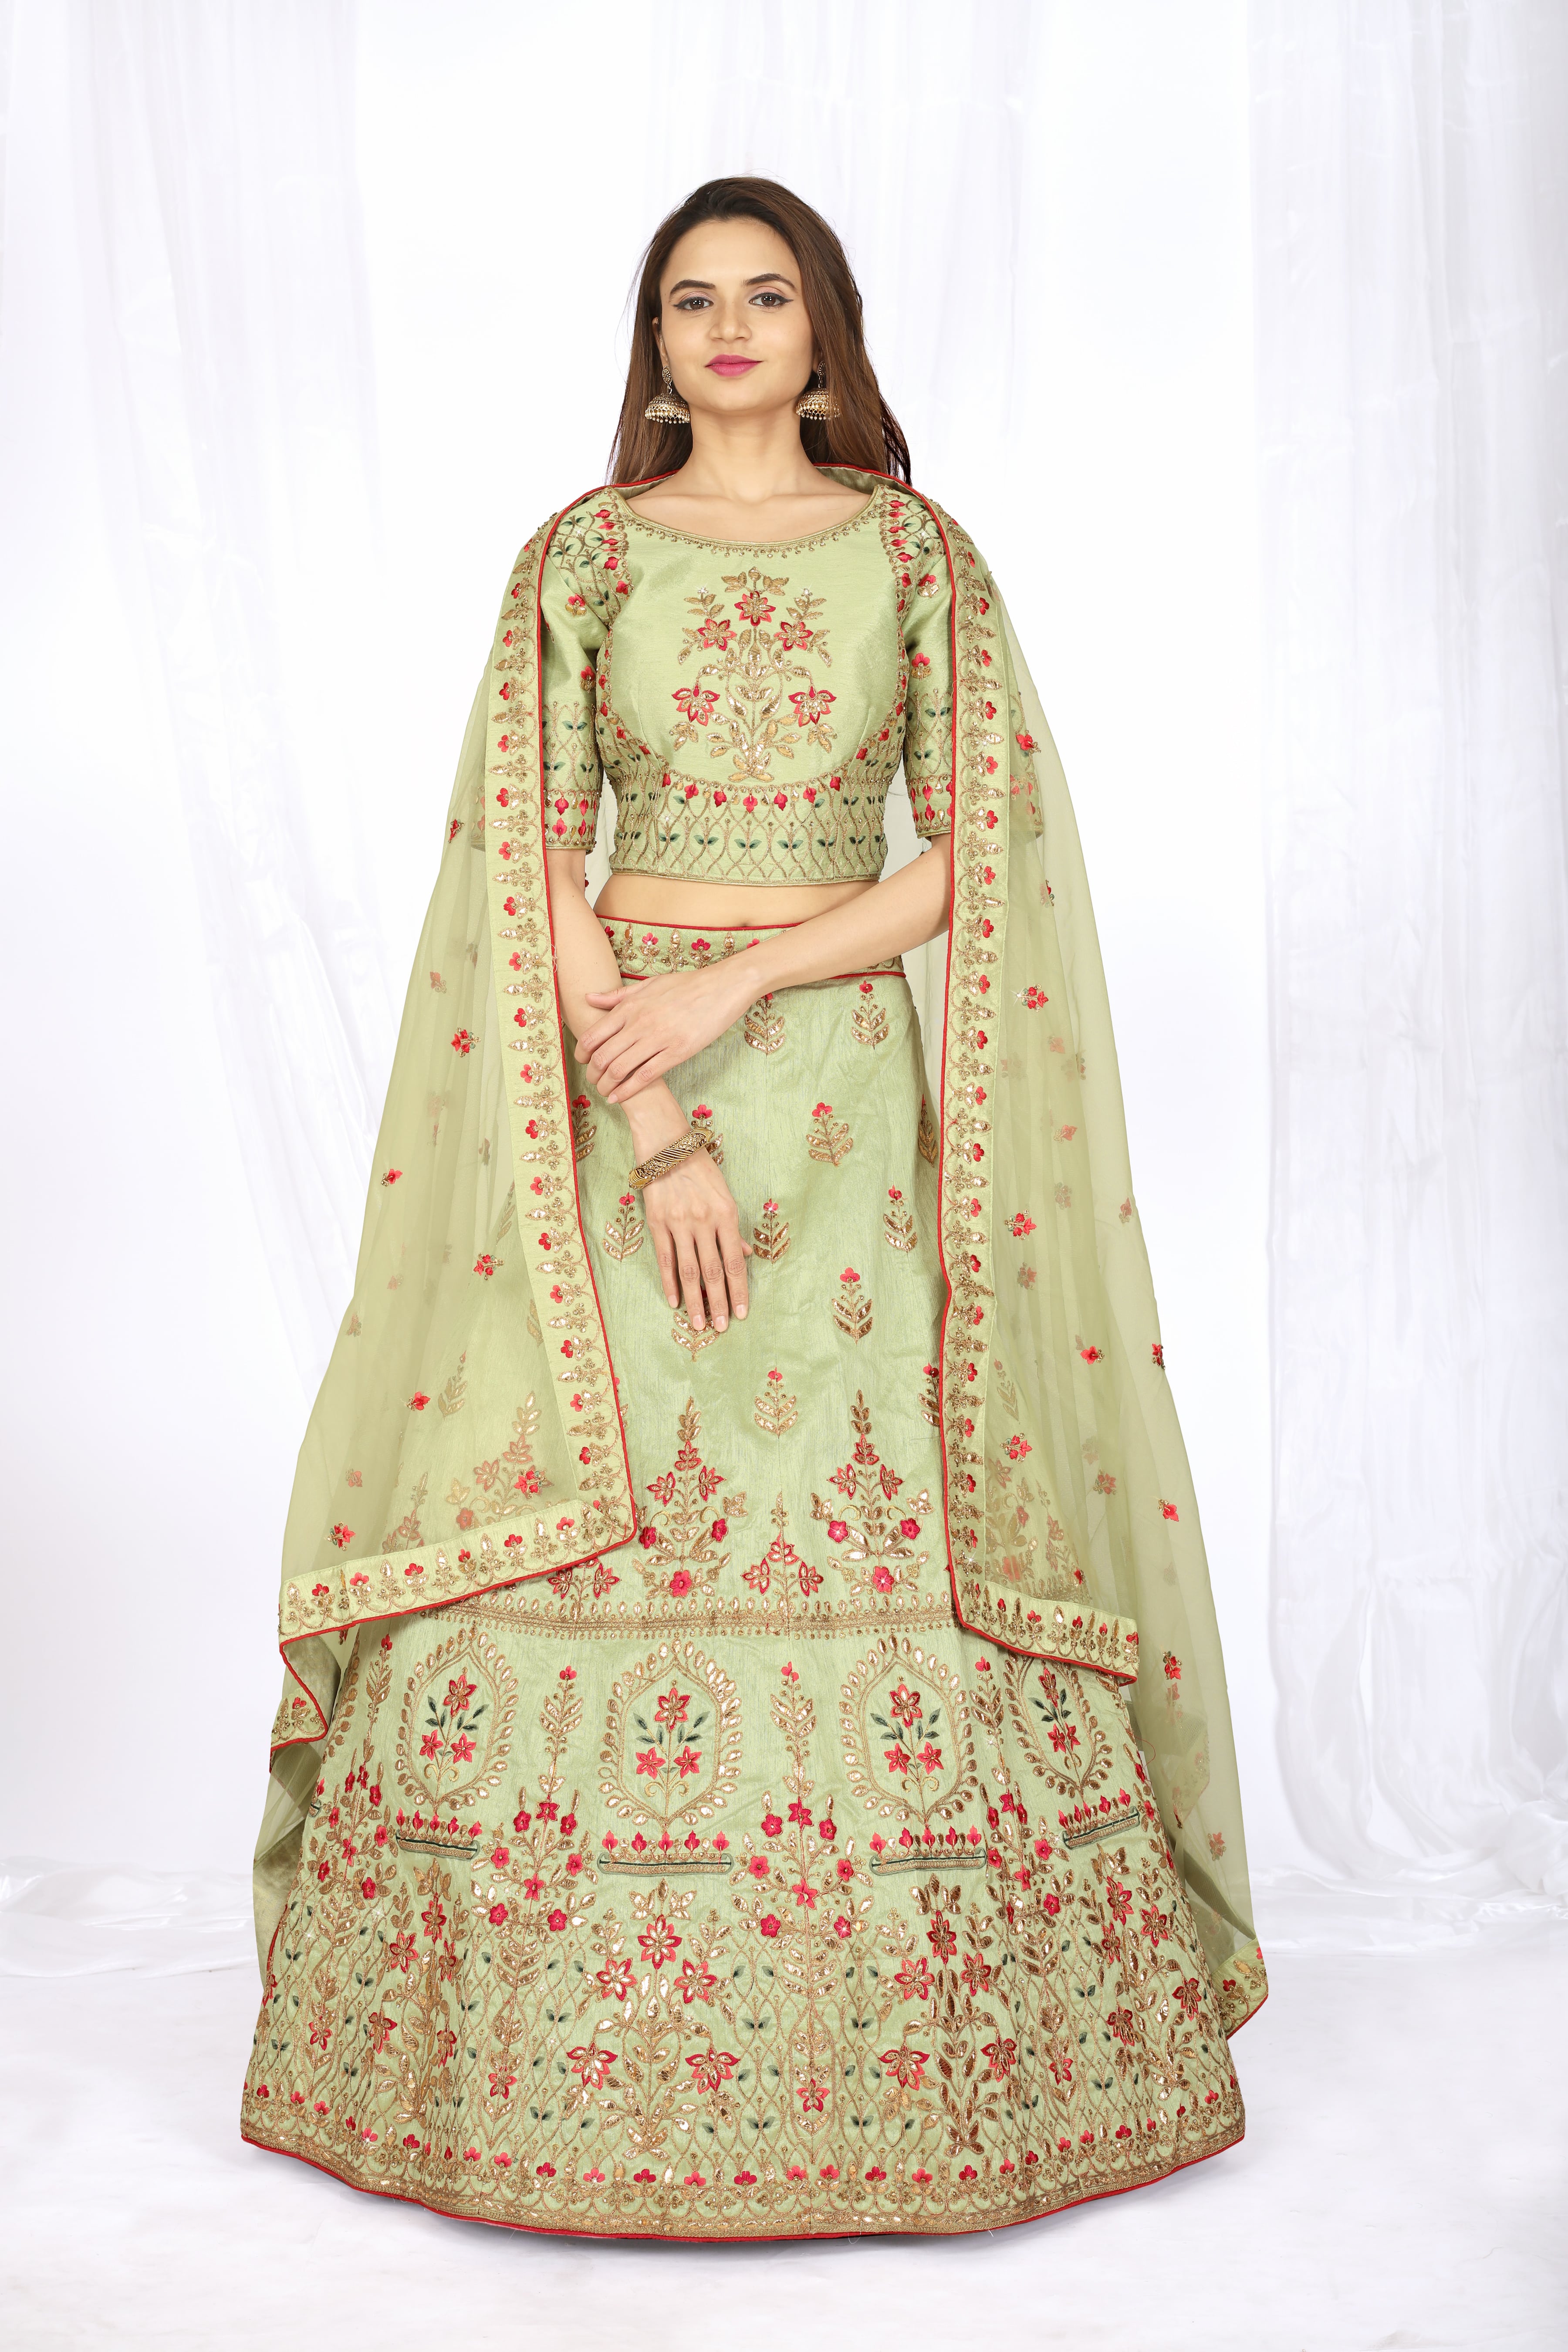 Party Wear Lehenga Choli With Price | Maharani Designer Boutique